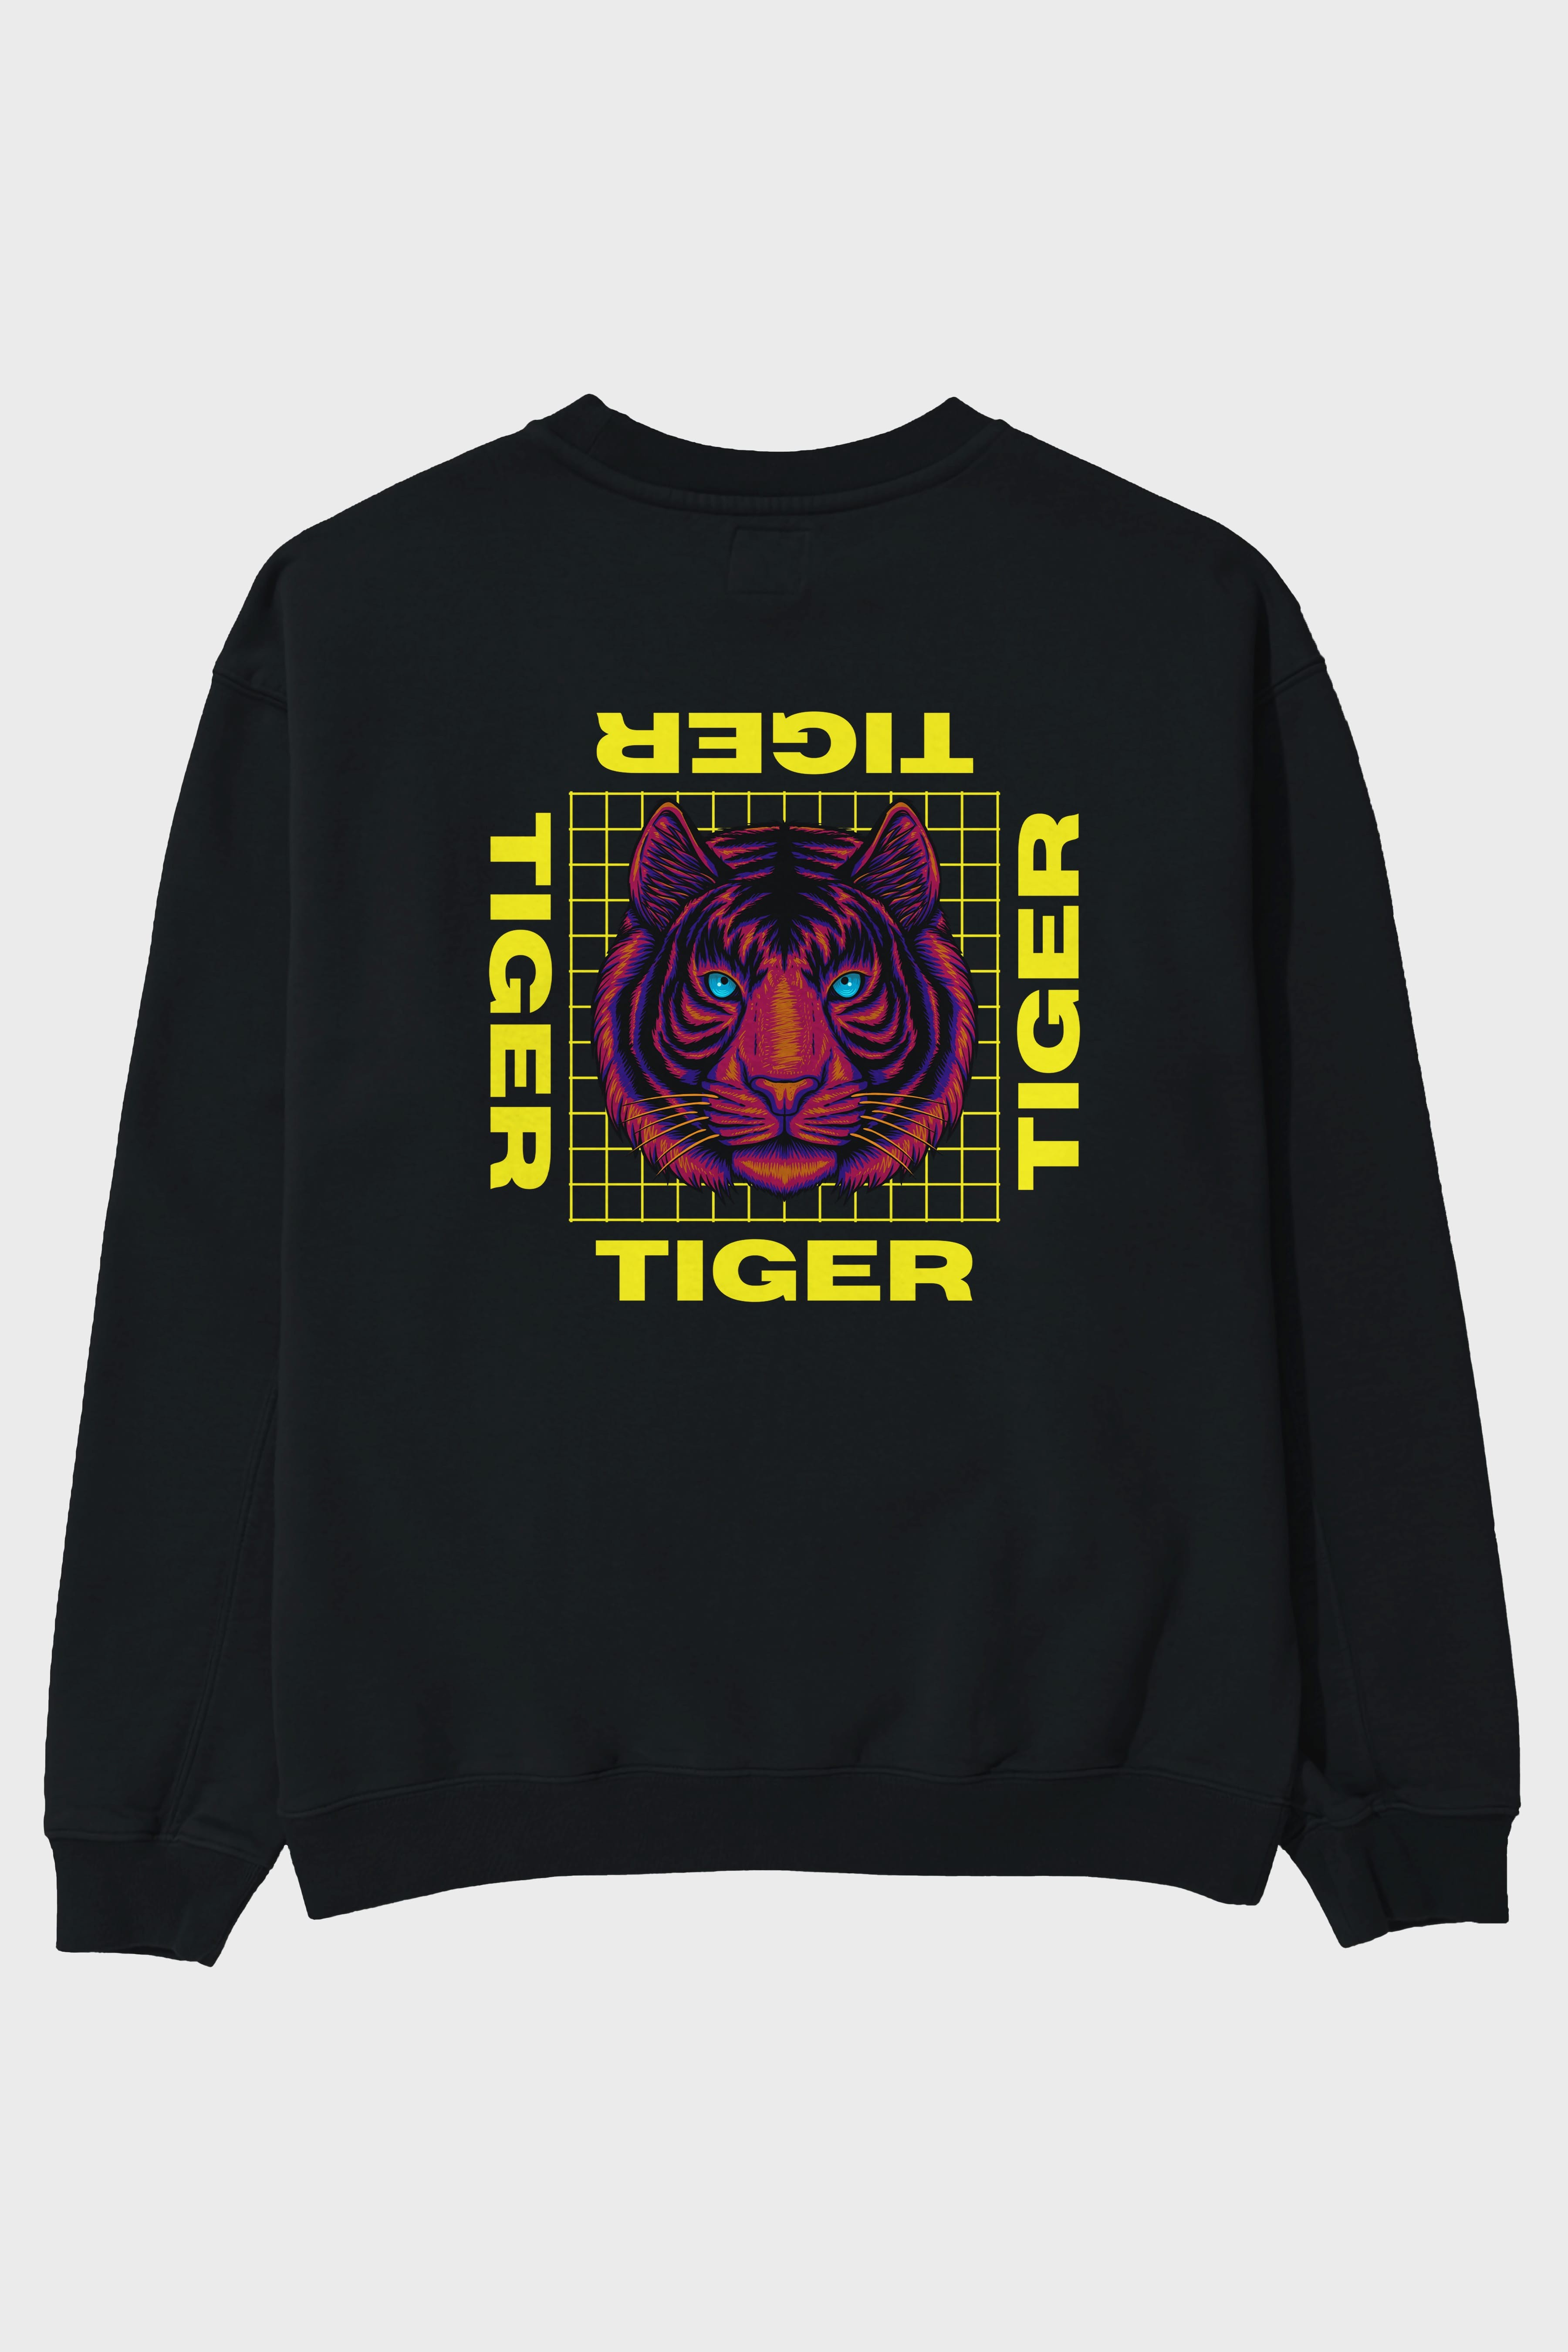 Tiger Yazılı Streetwear Arka Baskılı Oversize Sweatshirt Erkek Kadın Unisex